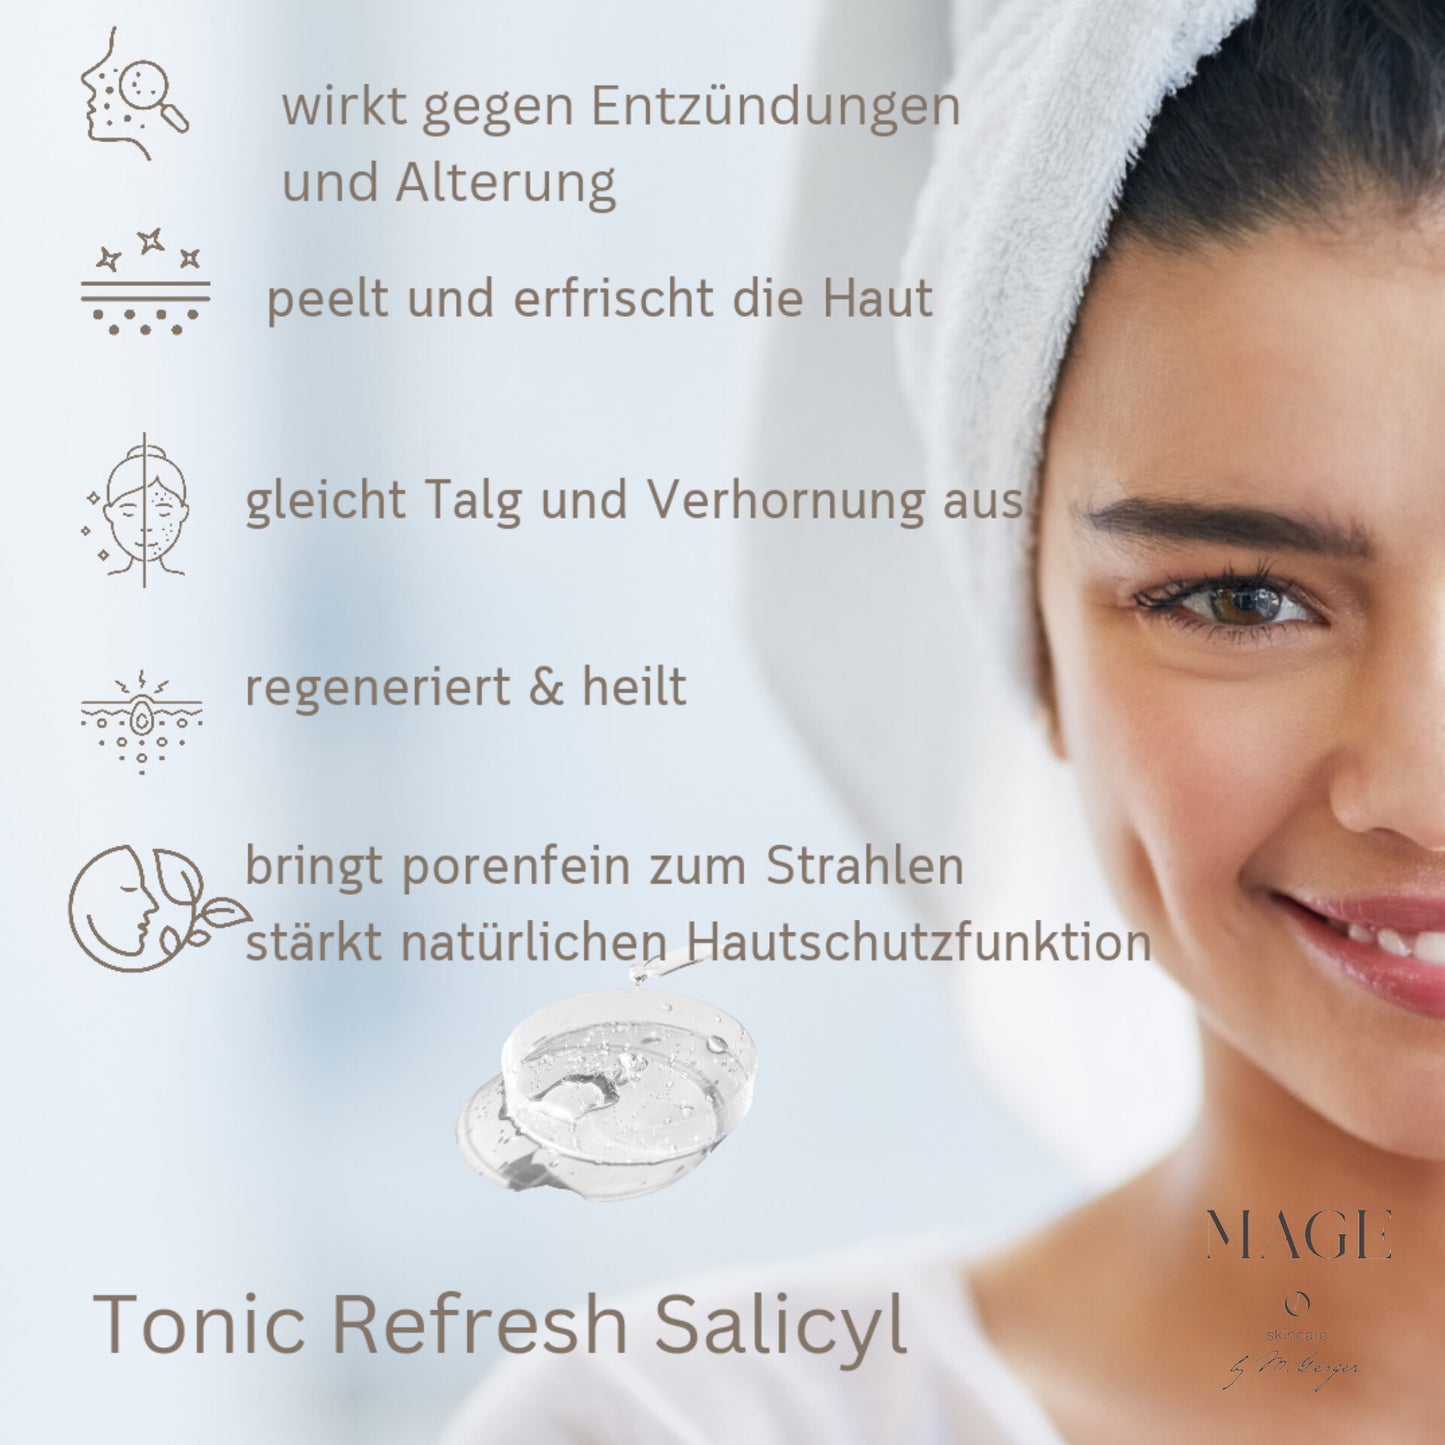 Tonic Refresh Salicyl peelt und erfrischt die Haut wirkt gegen Entzündungen und Alterung